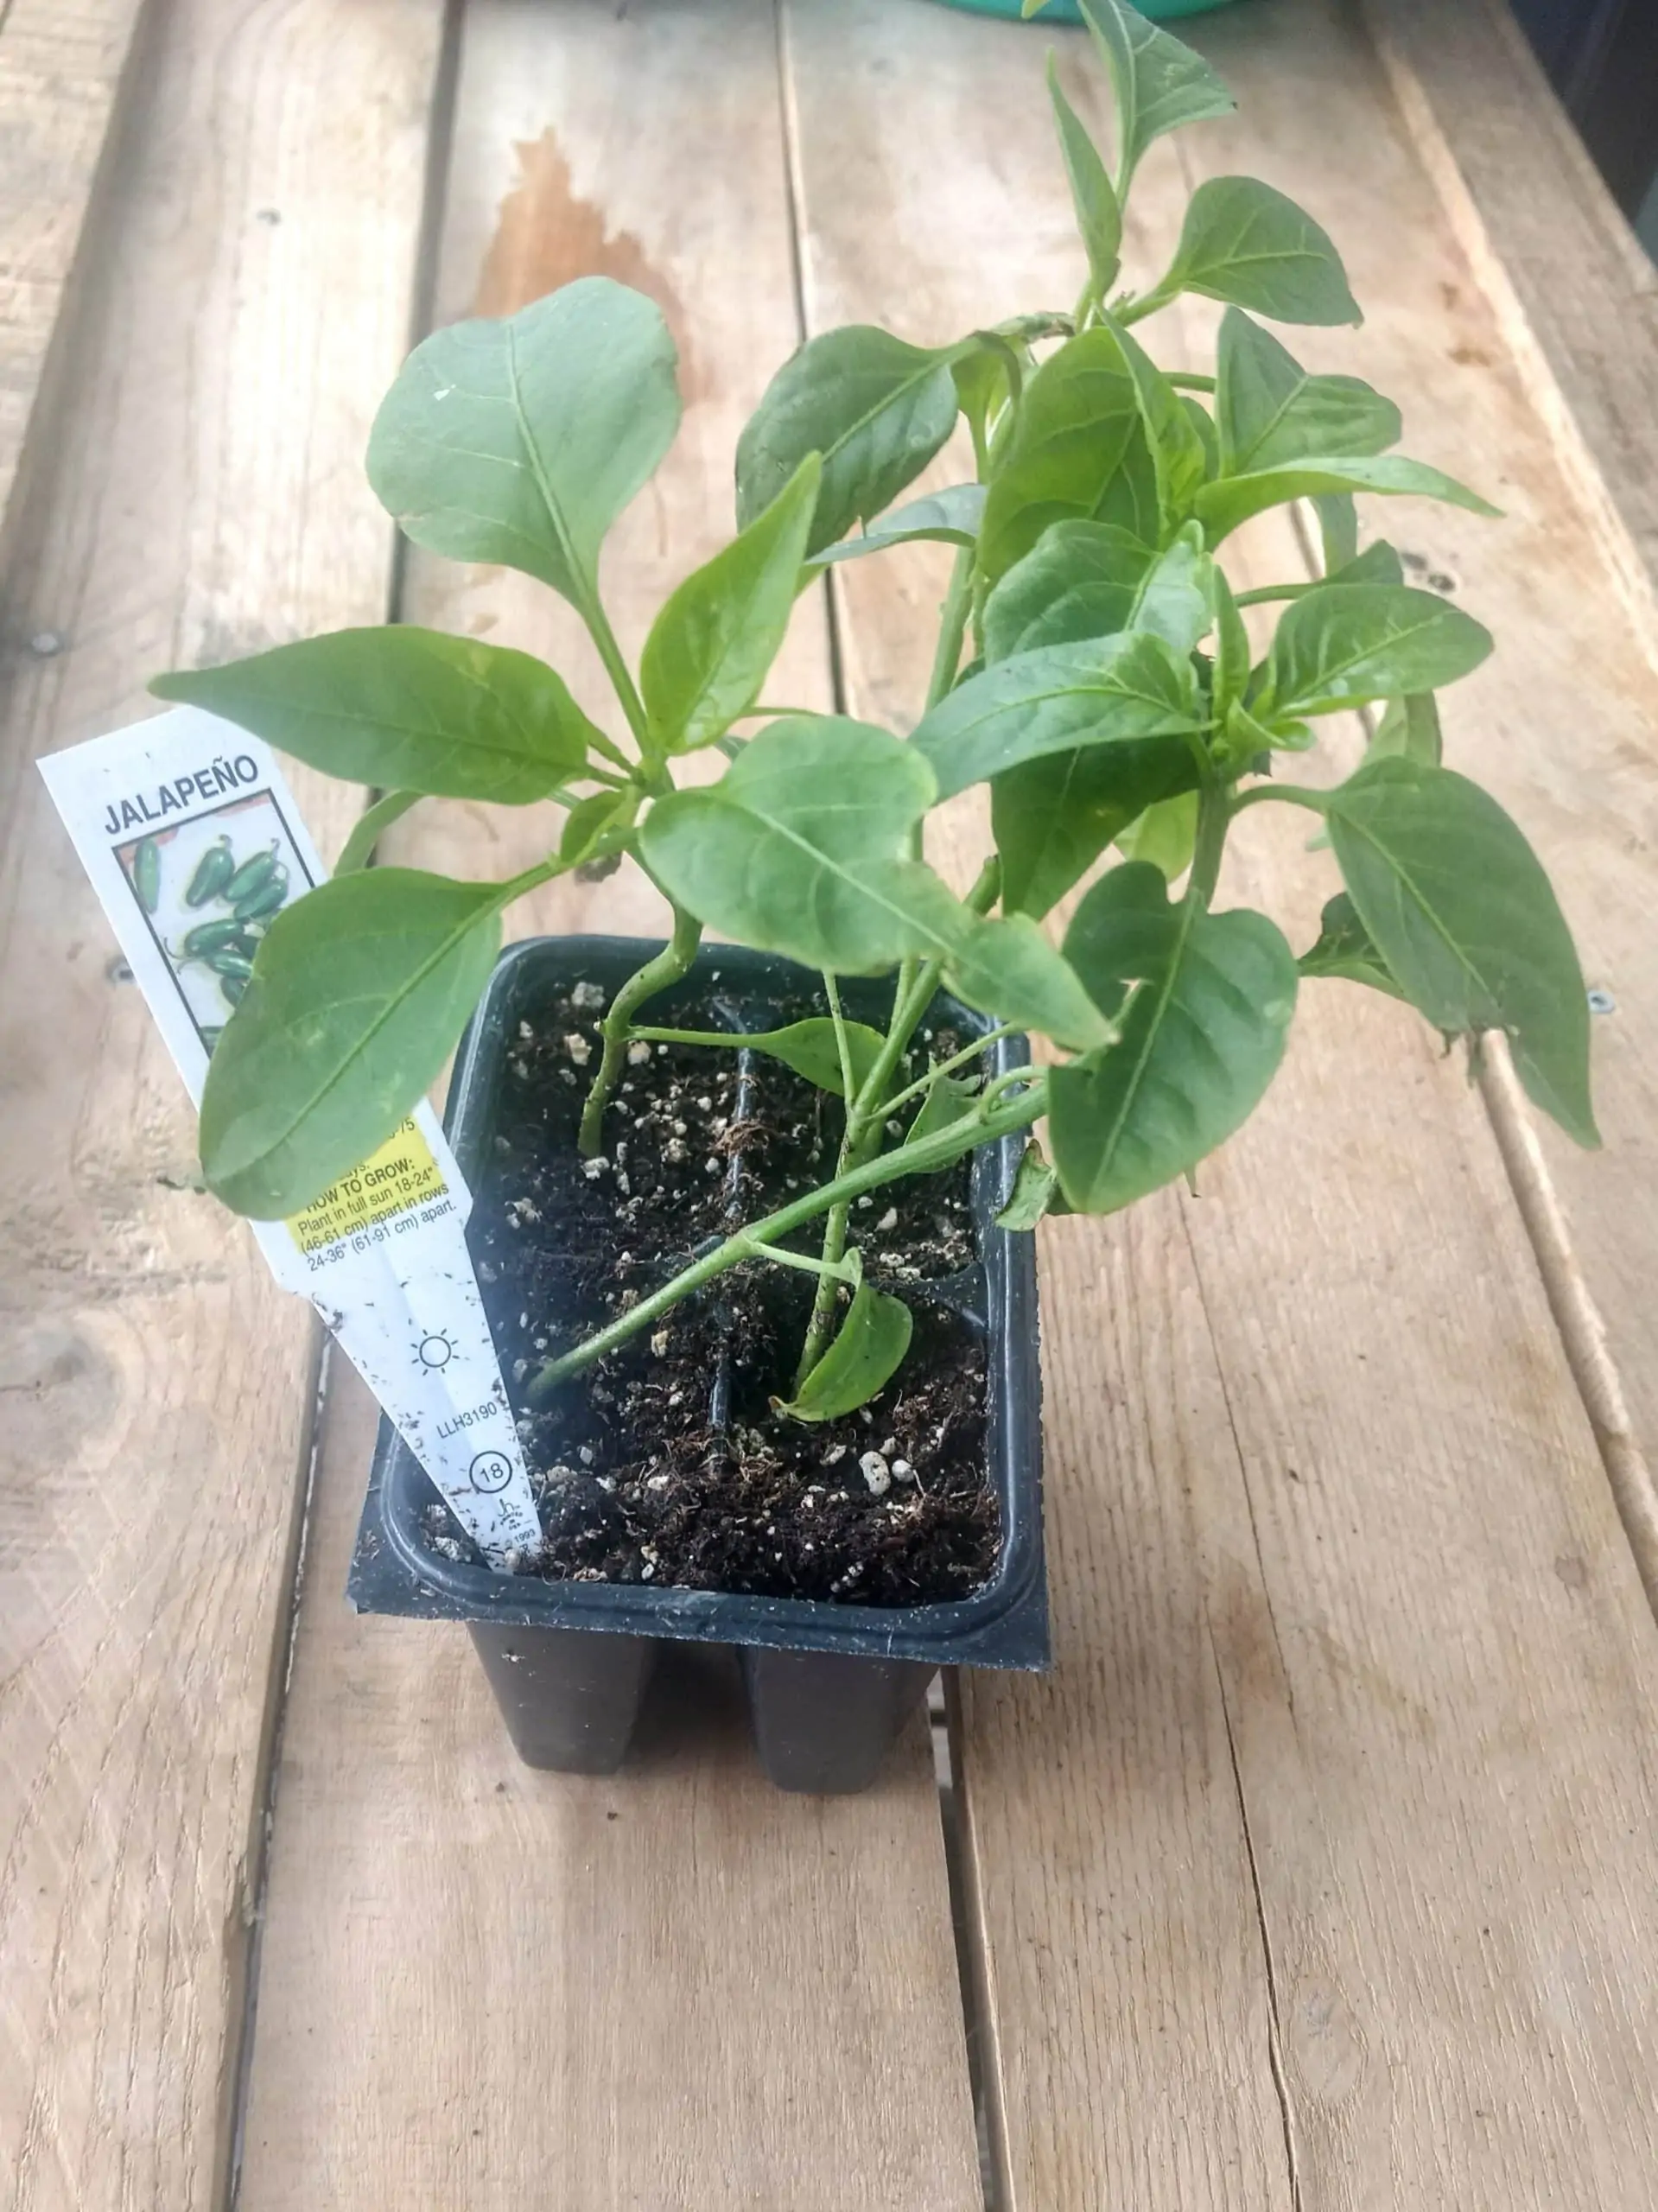 Jalapeno pepper seedlings